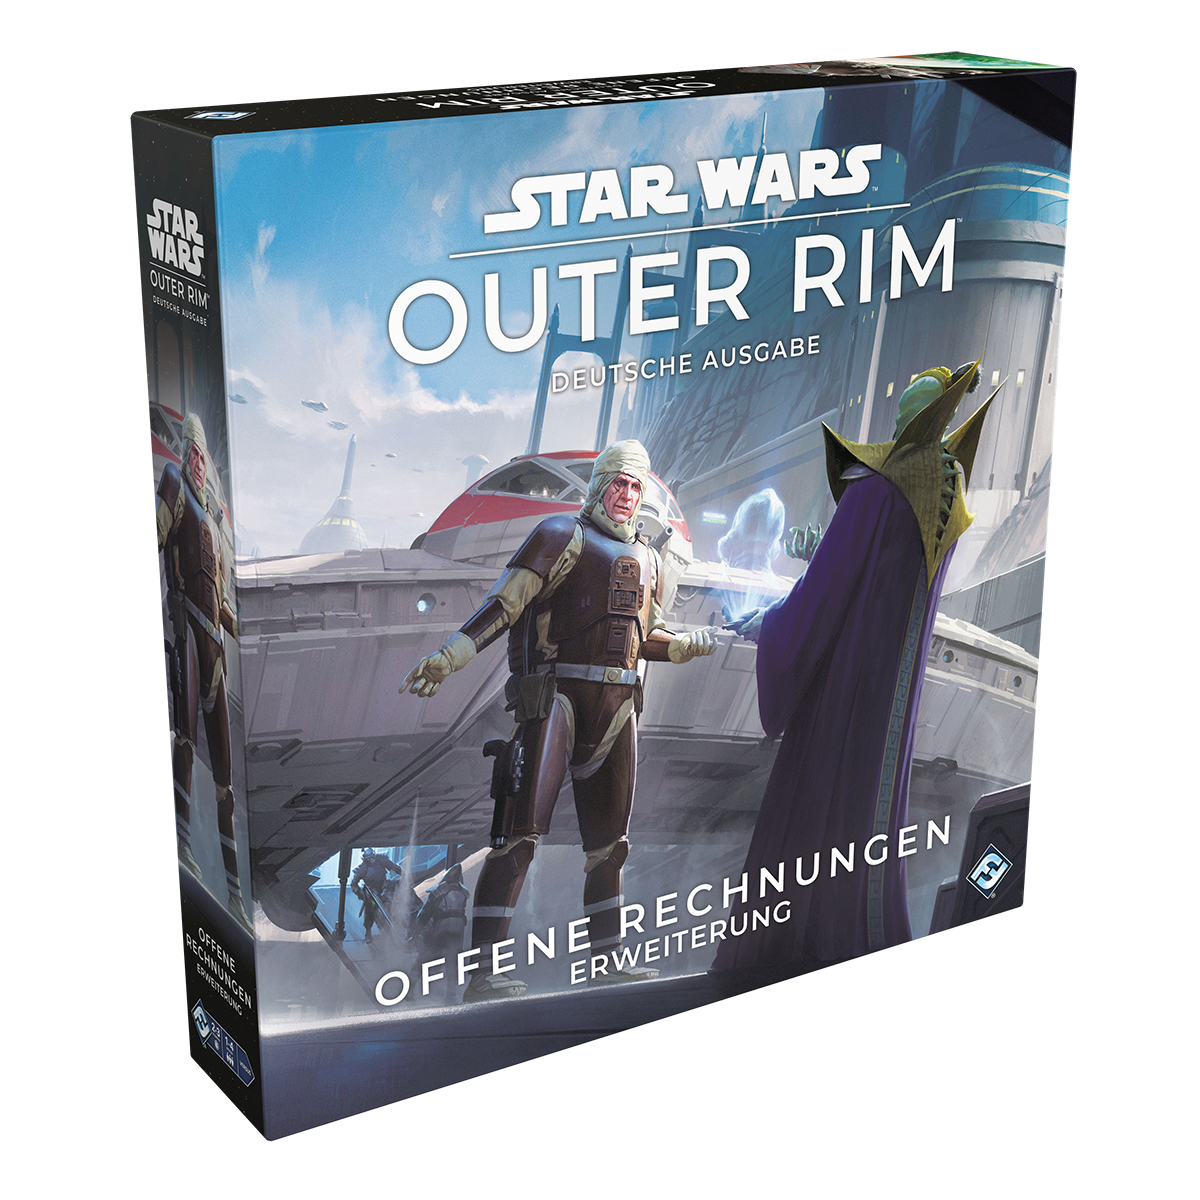 Star Wars: Outer Rim - Offene Rechnungen